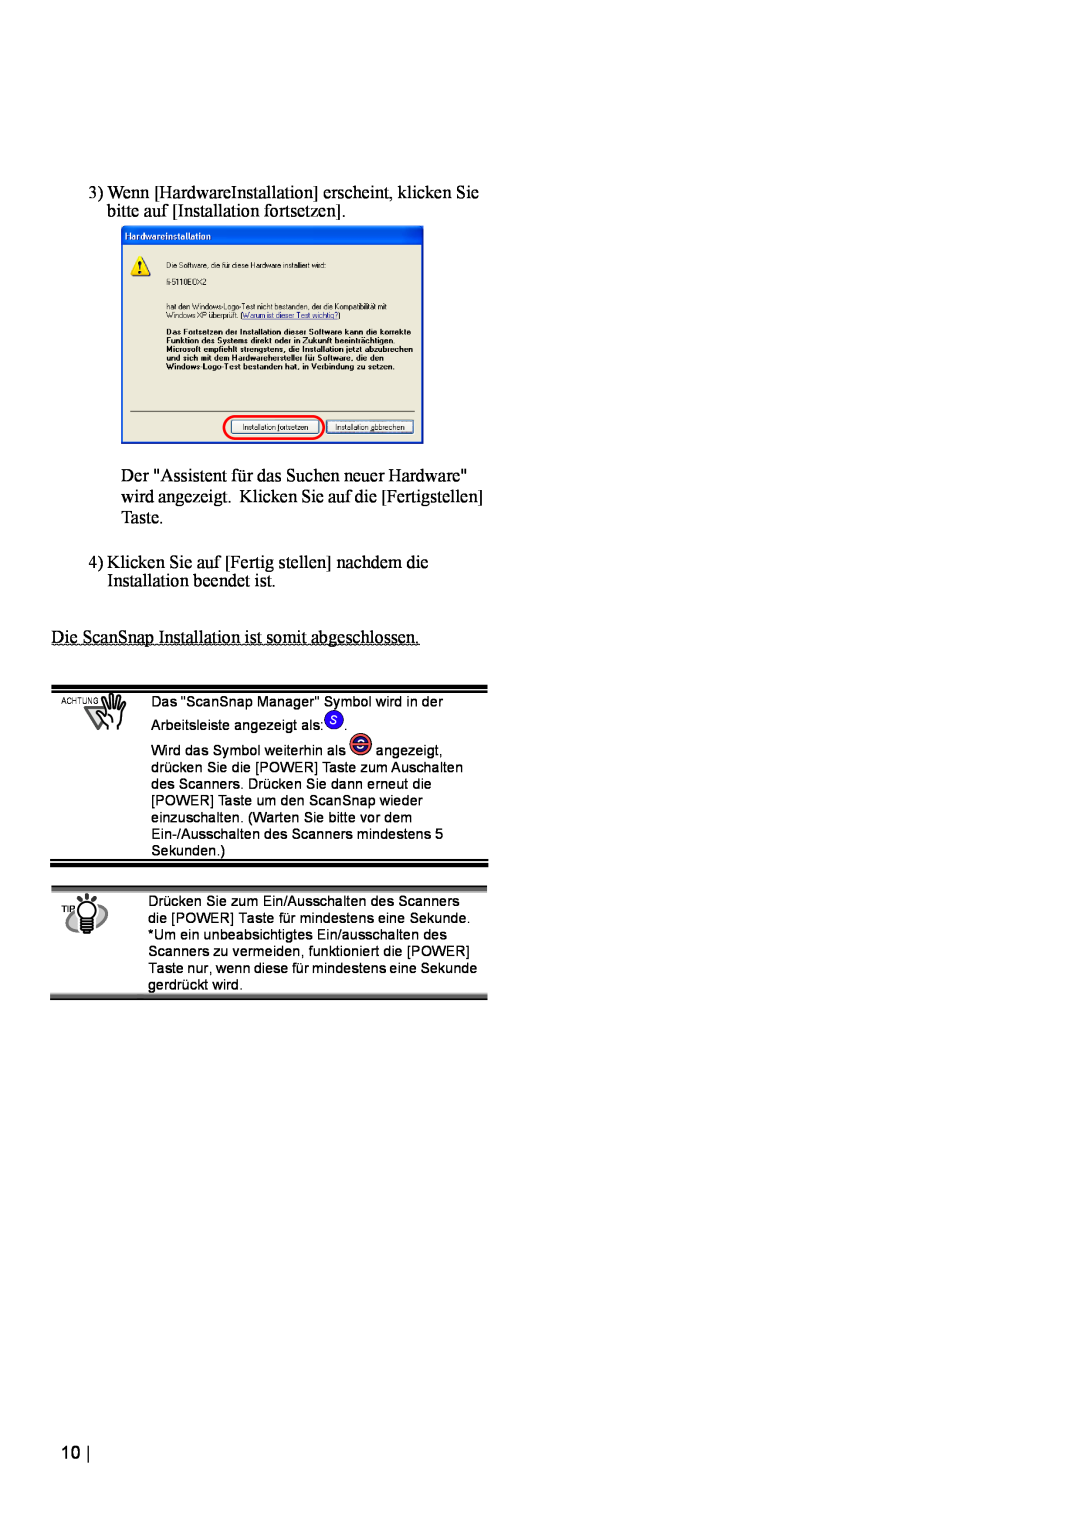 Fujitsu fi-5110EOX2 manual Klicken Sie auf Fertig stellen nachdem die Installation beendet ist 